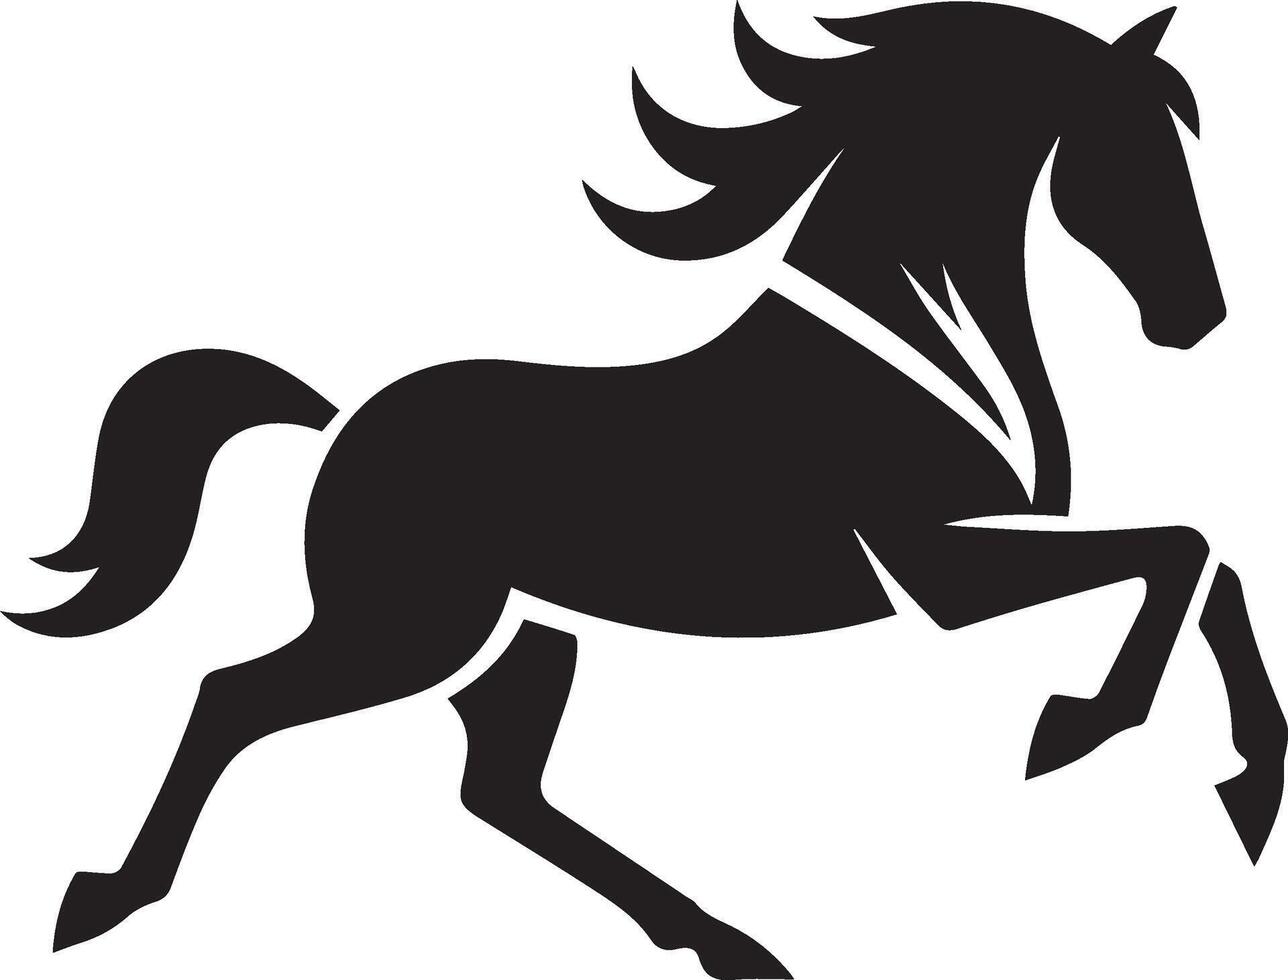 caballo silueta animal conjunto aislado en blanco antecedentes. negro caballos gráfico elemento ilustración.alto resolución jpg, eps 10 incluido vector